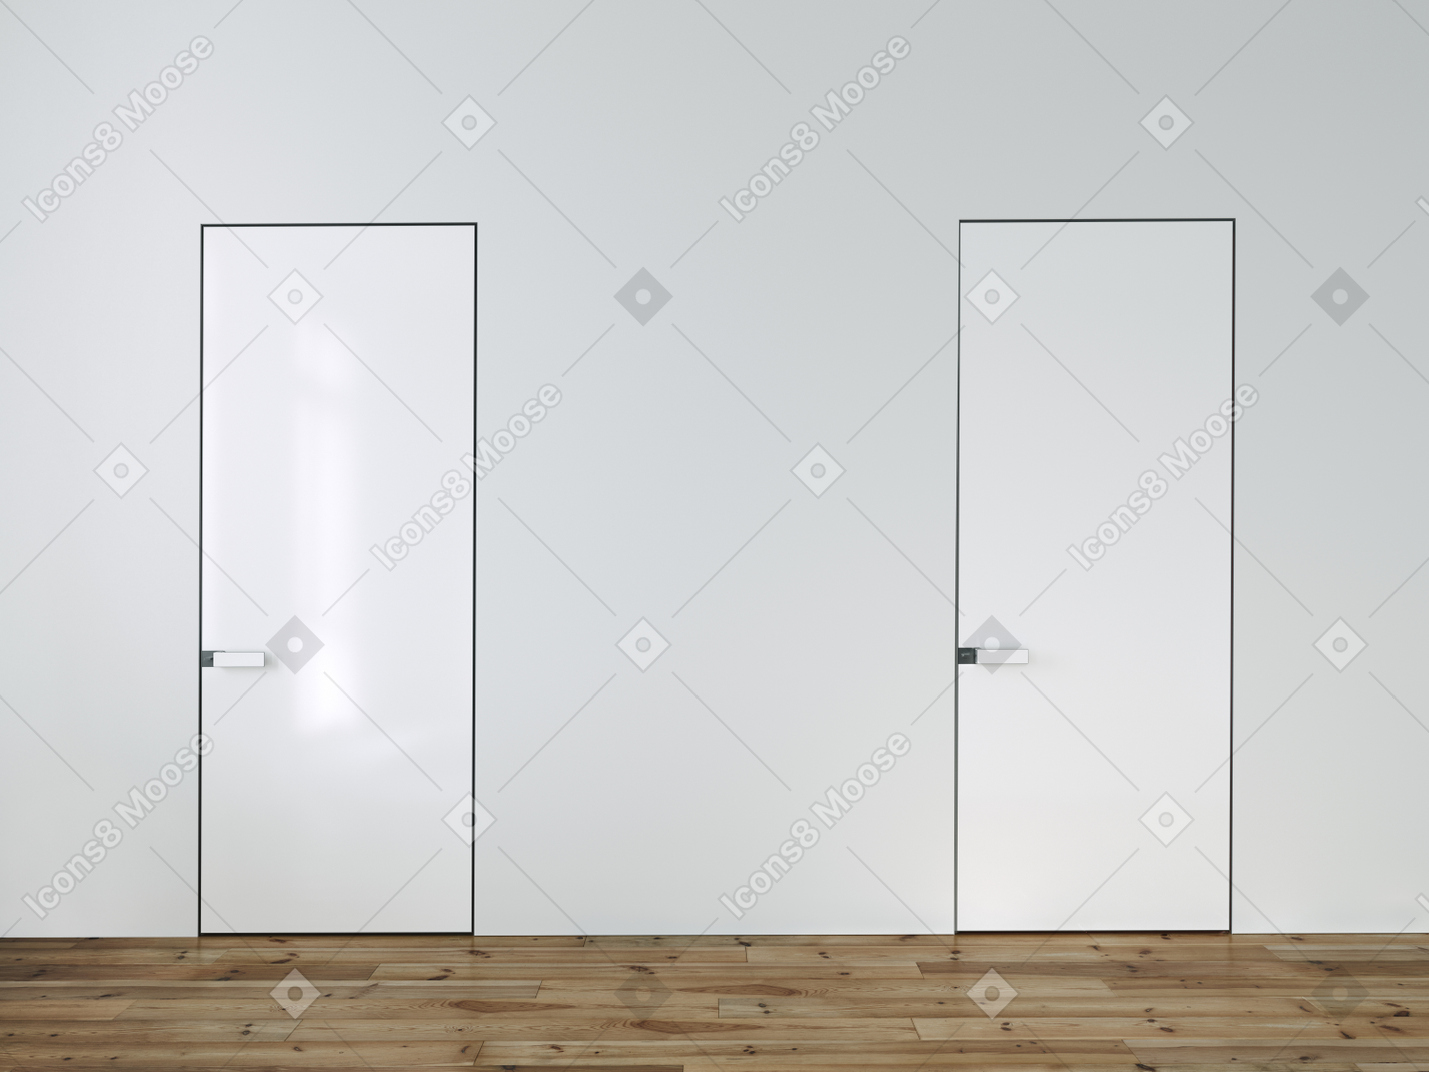 흰 벽에 두 개의 문